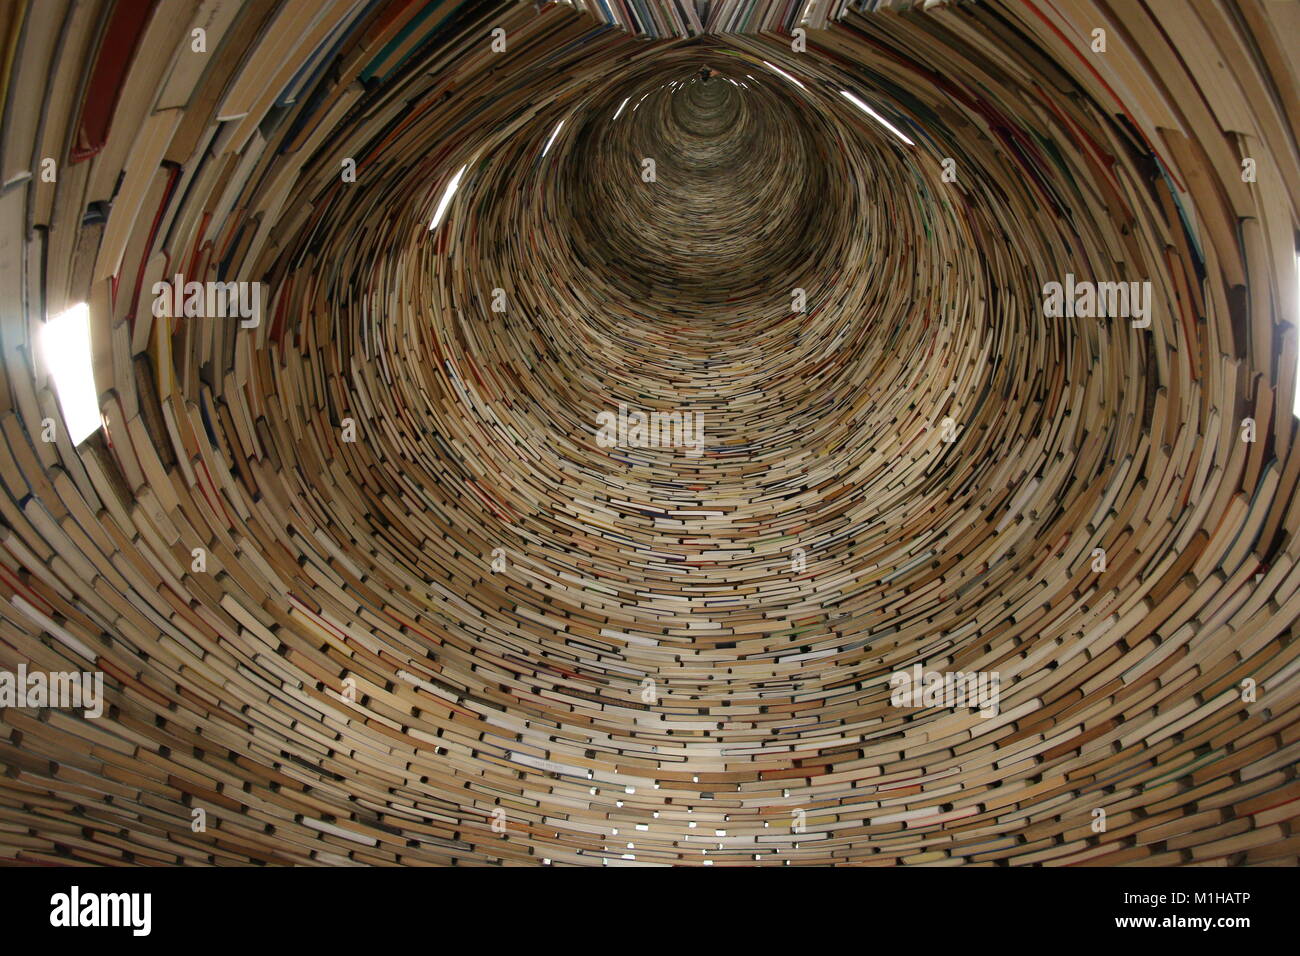 Ein Bild von einem Tunnel aus Büchern. Auf der Suche sehr hypnotisch. Es  ist der Bücher gemacht und Spiegel Stockfotografie - Alamy